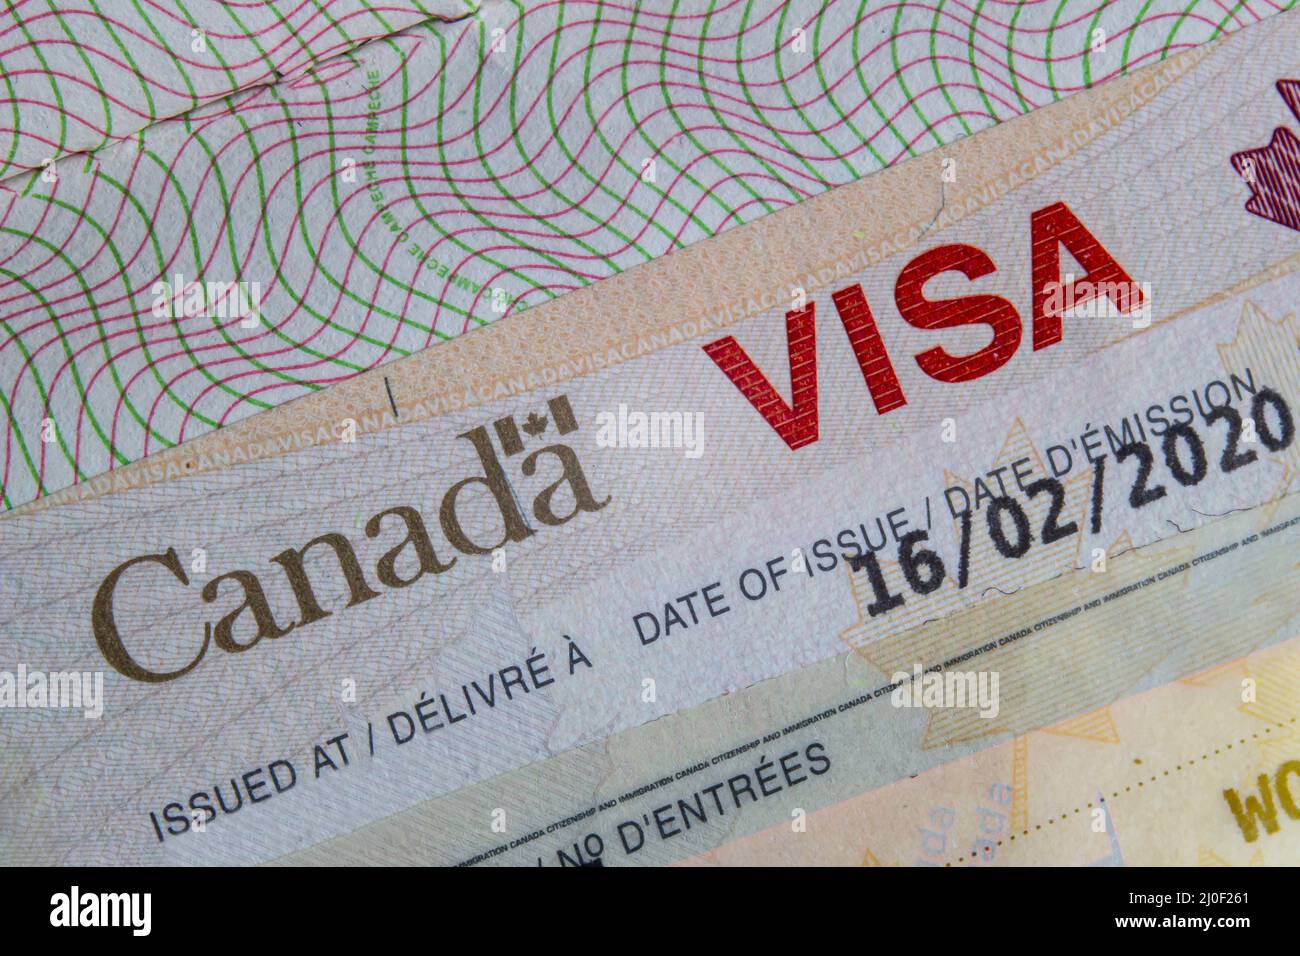 Un gros plan D'UN VISA du Canada sur un passeport à l'intérieur de la page Banque D'Images